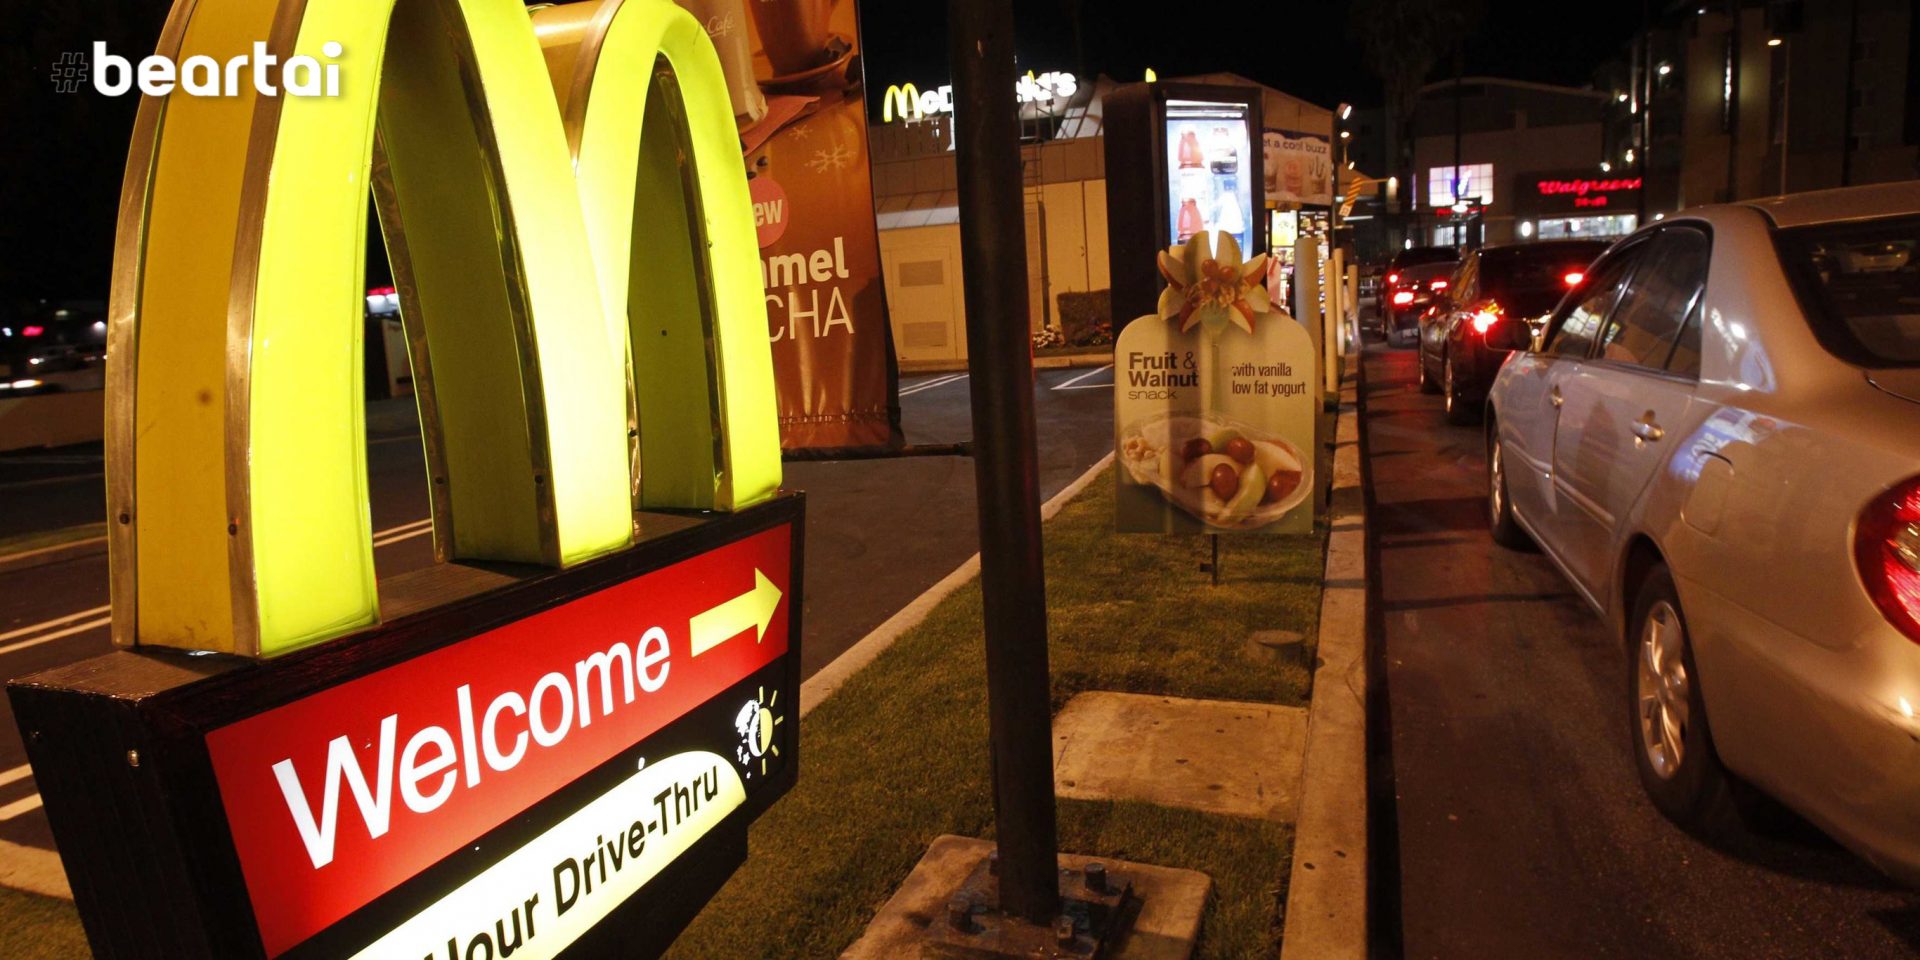 McDonald เตรียมใช้ AI รับการสั่งซื้อด้วยเสียงสำหรับการนั่งสั่งบนรถที่ขับมา (Drive-through)